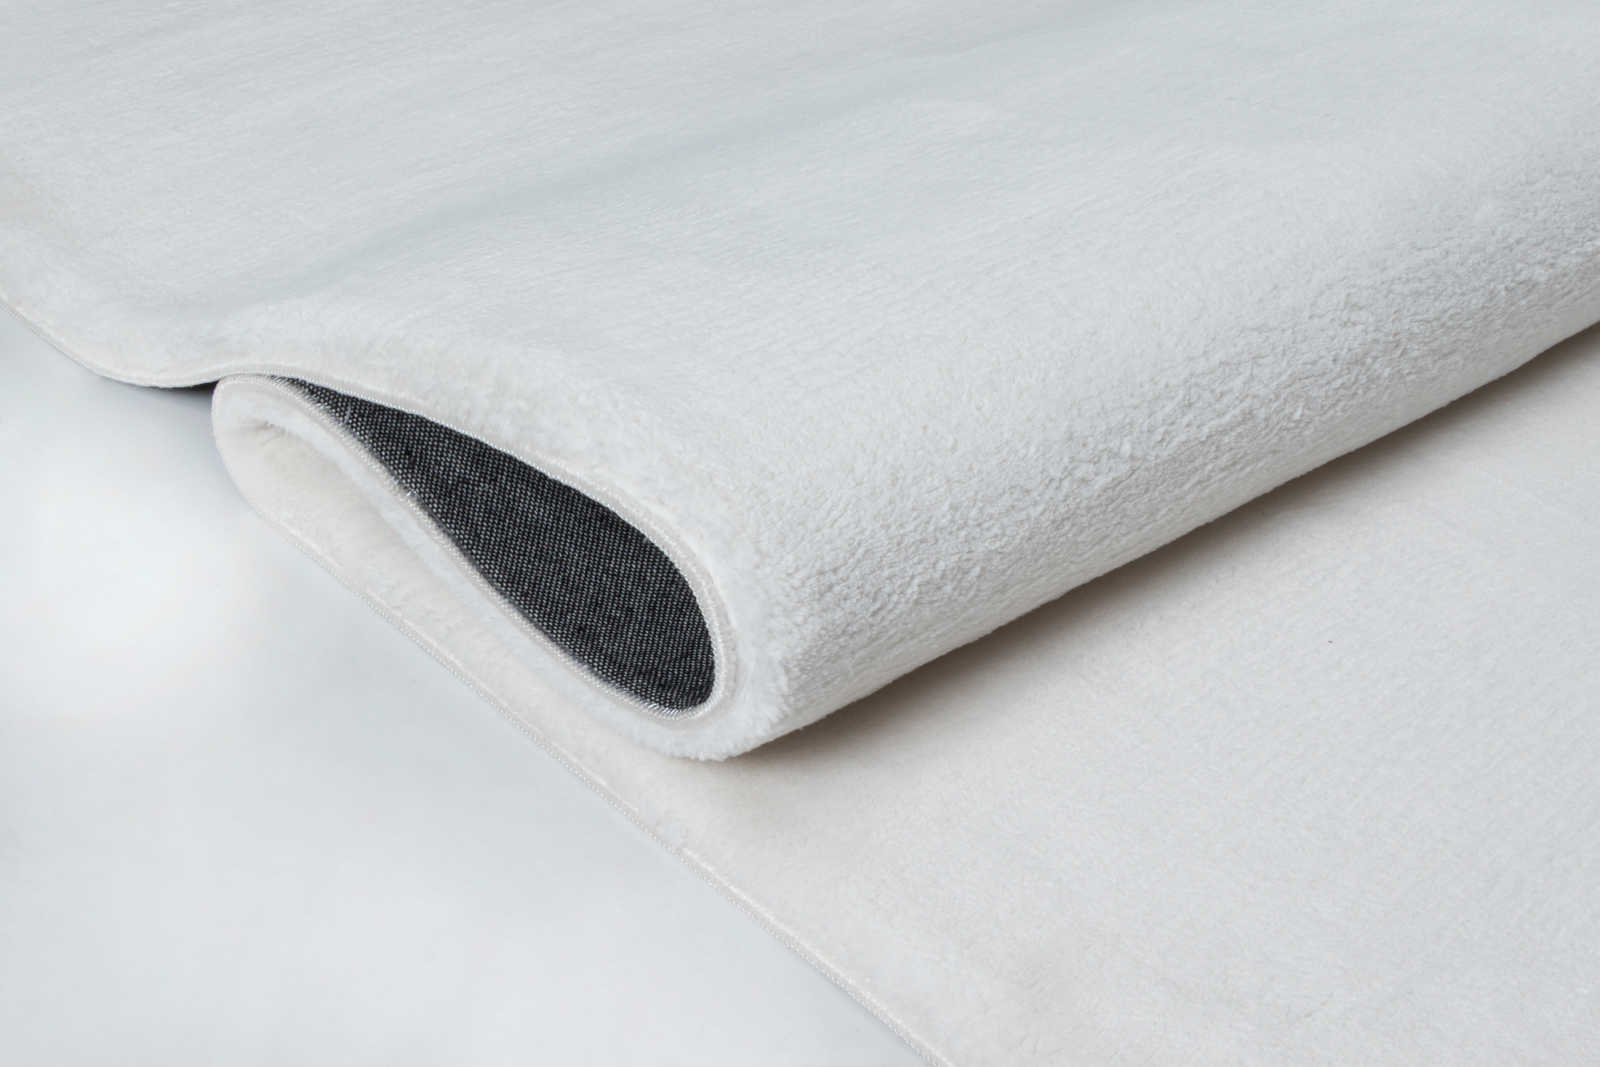             Pluizig hoogpolig tapijt in aangenaam crème - 150 x 80 cm
        